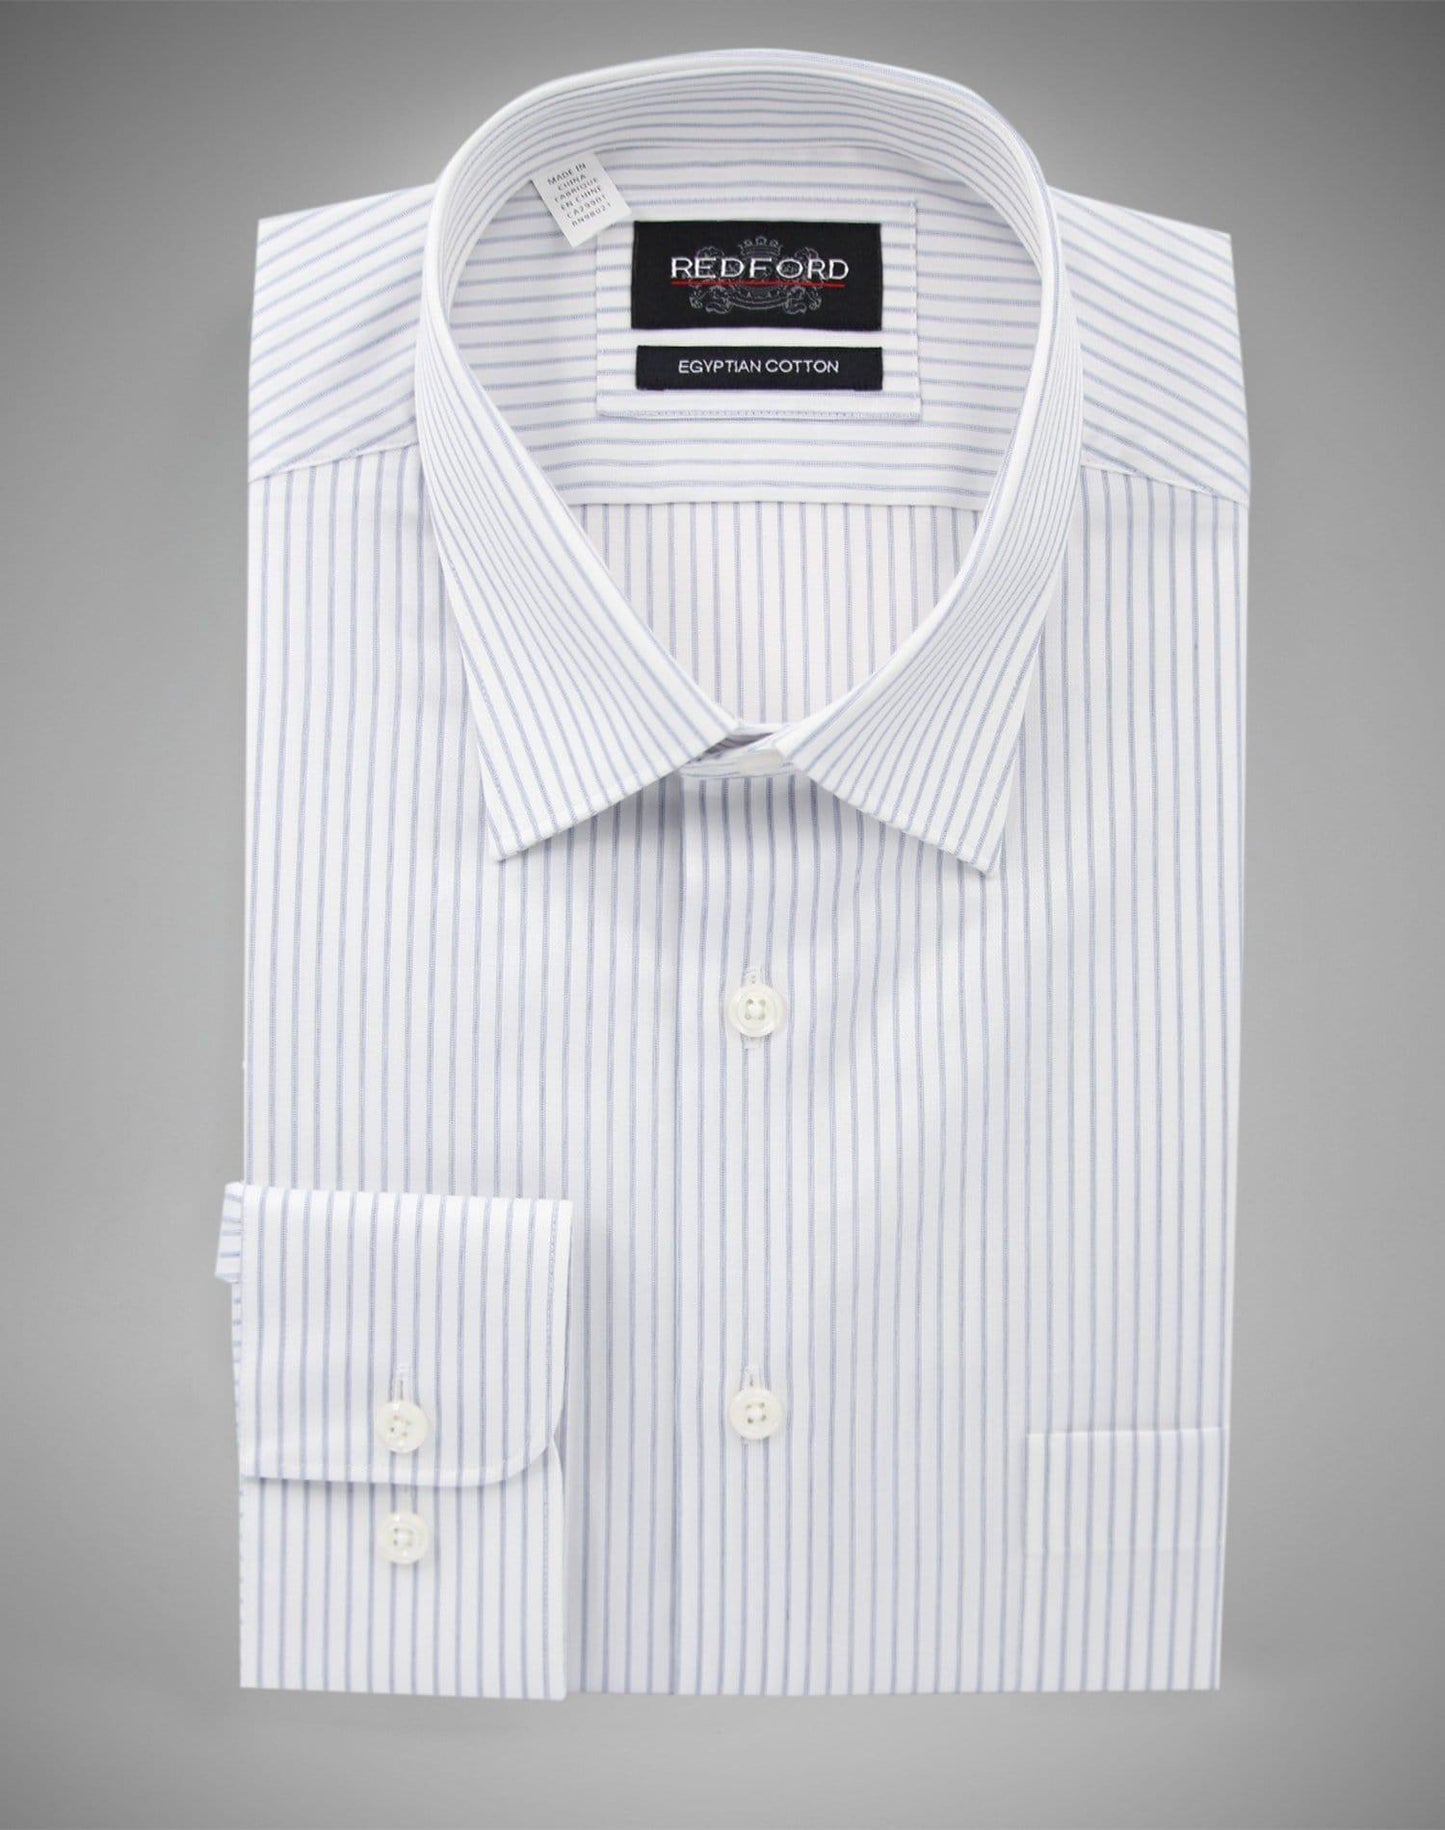 Non-Iron White with Grey Stripe Shirt - Just White Shirts